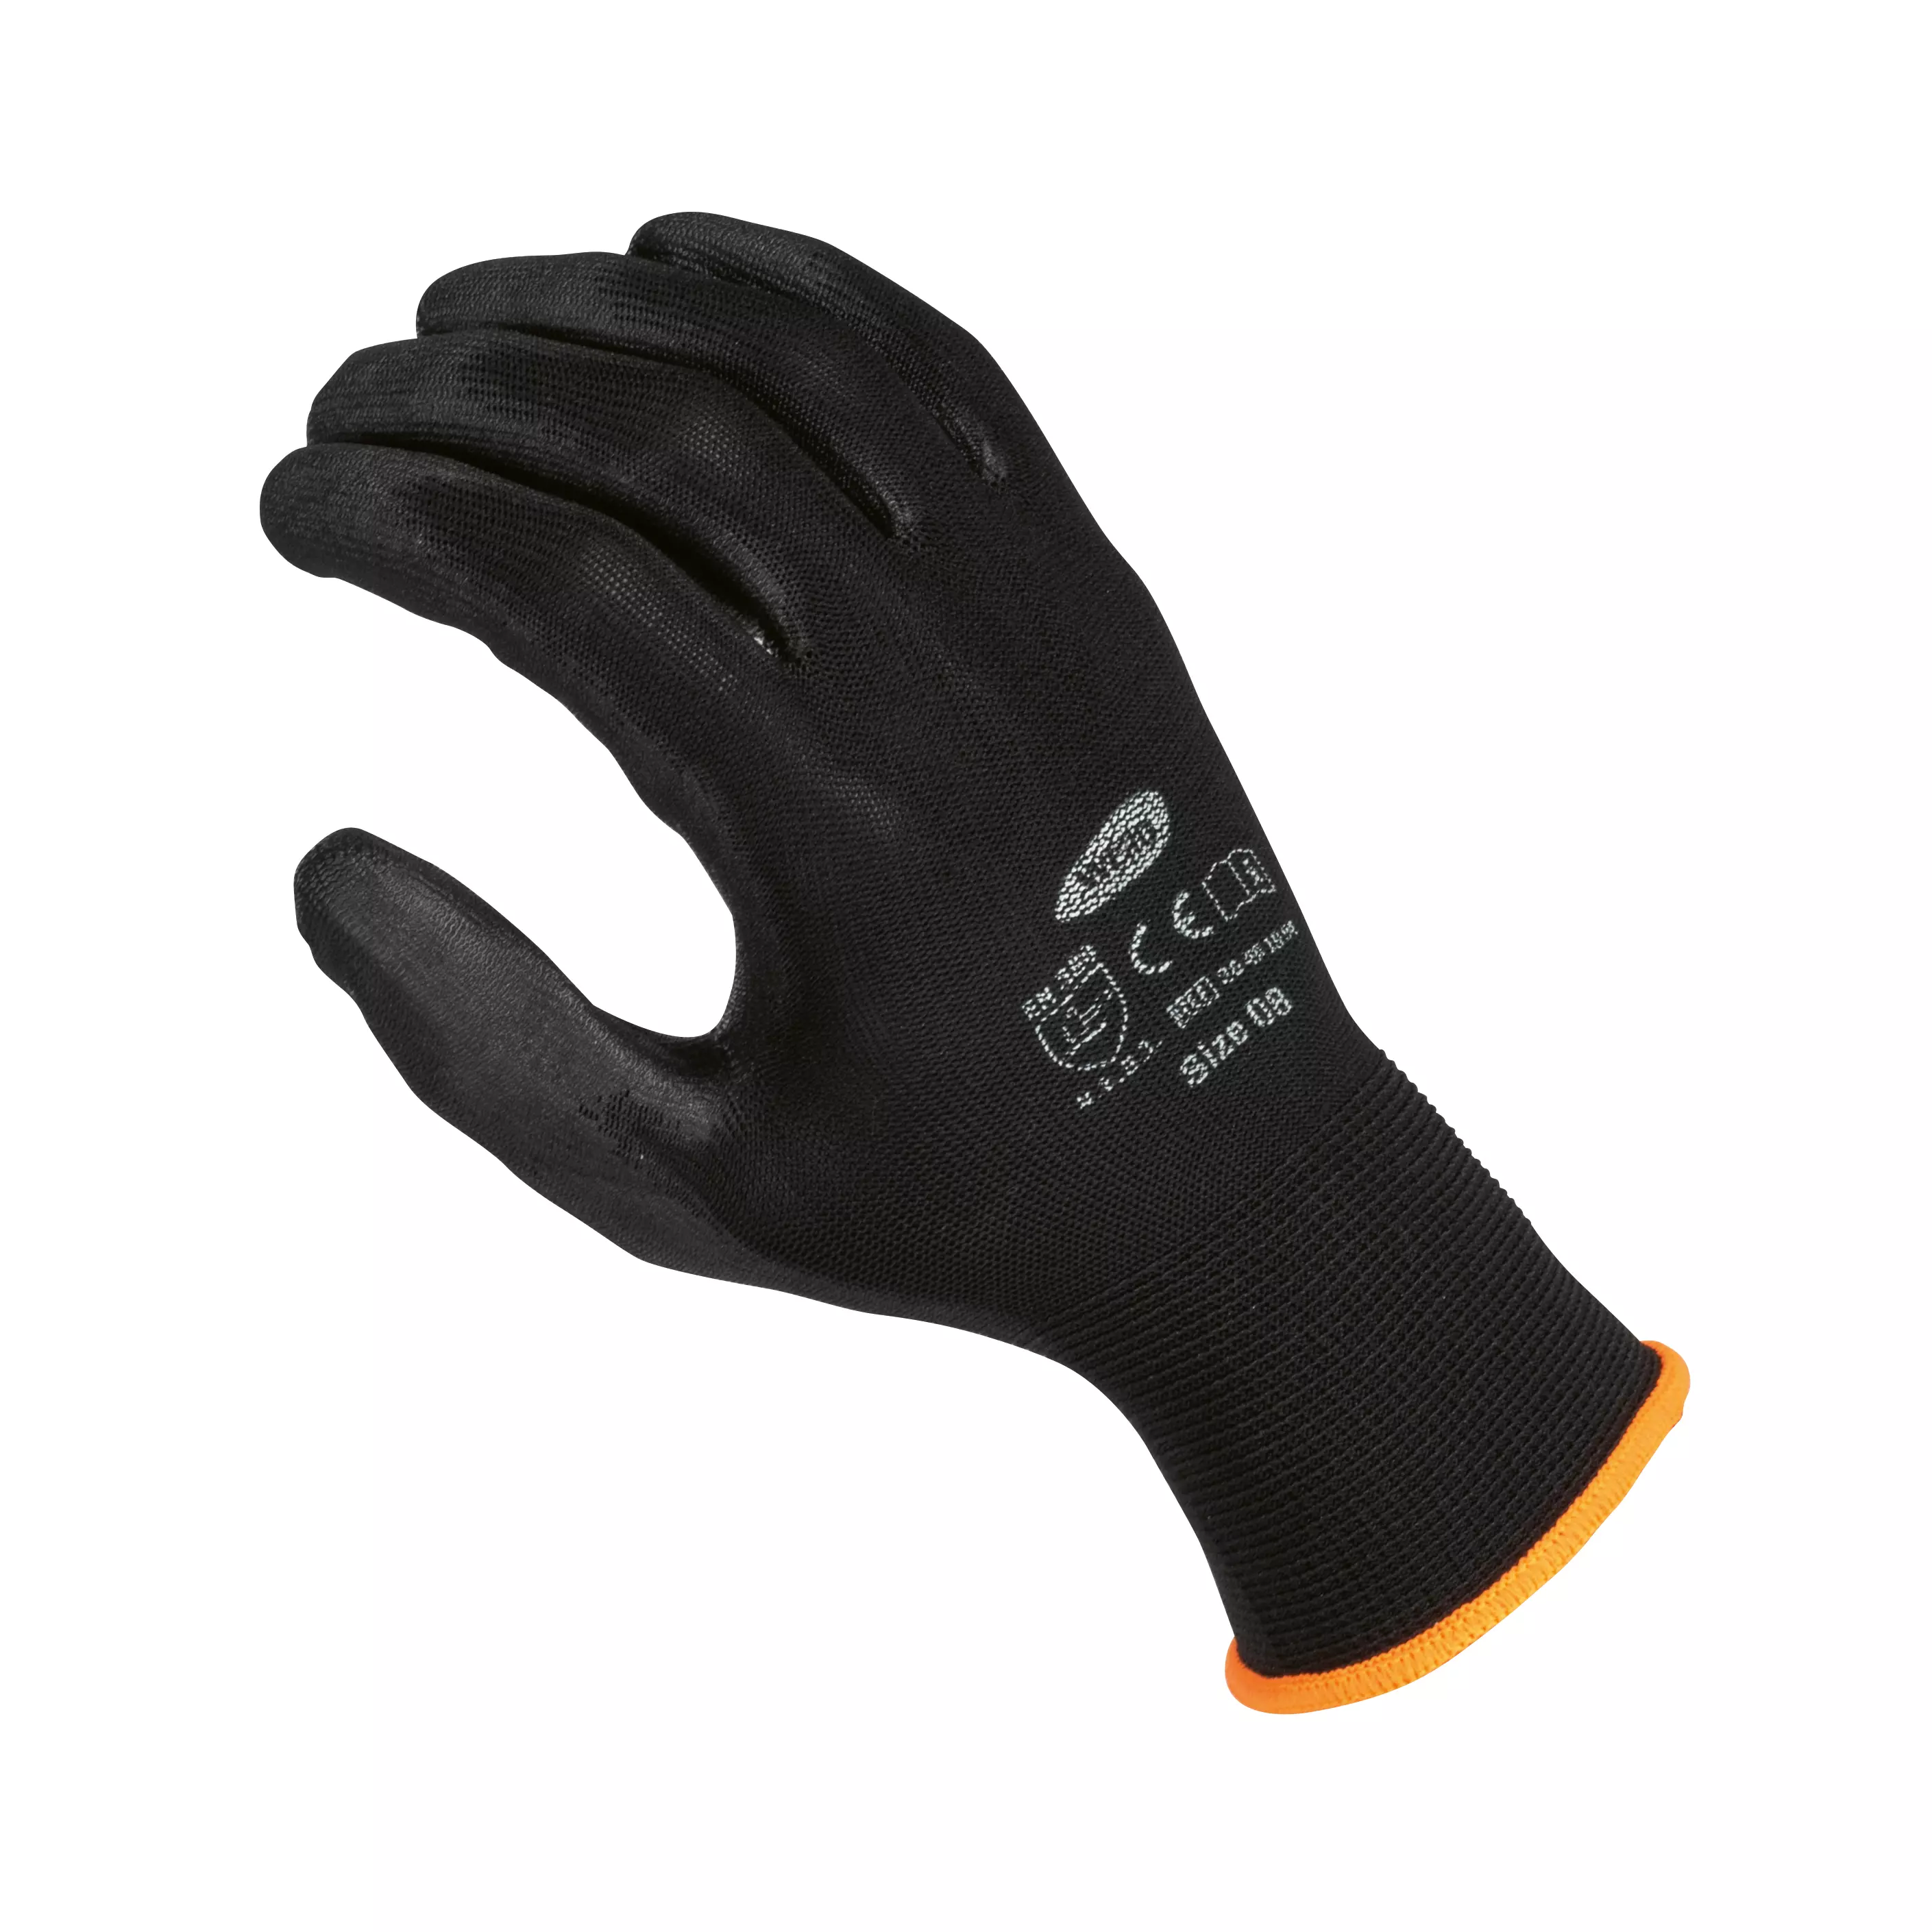 Fine knit glove WERO Allrounder, 12 pairs - Black, 6